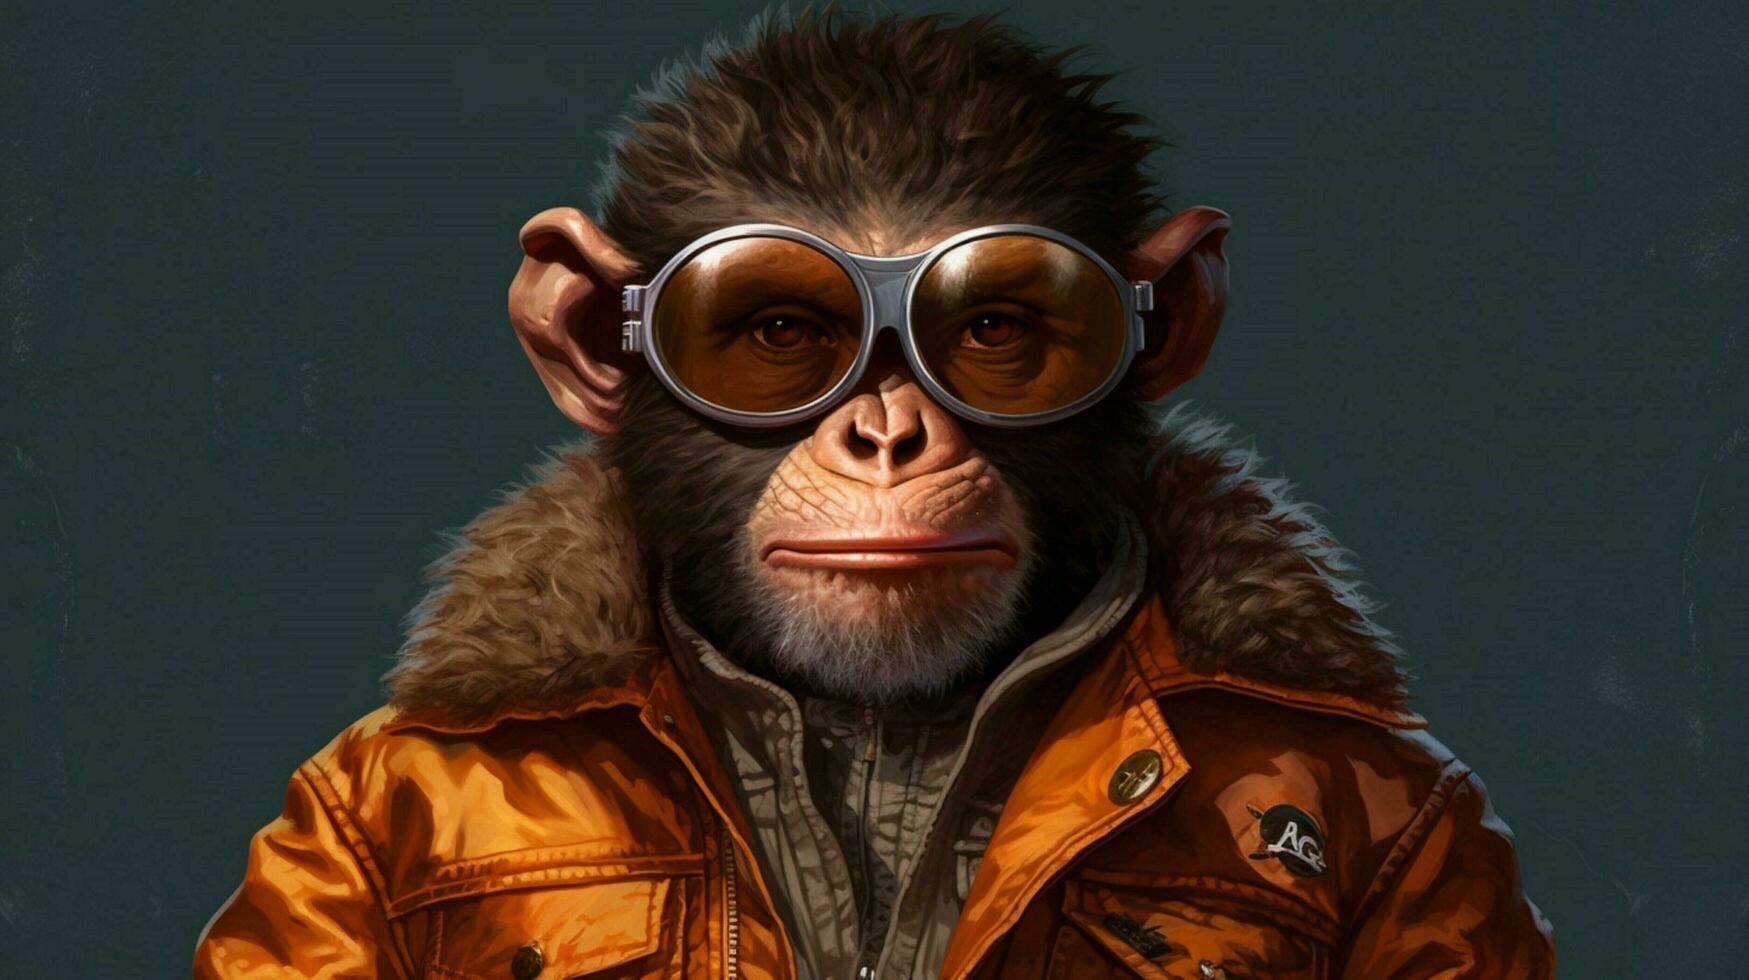 un mono con lentes y un chaqueta ese dice plan foto